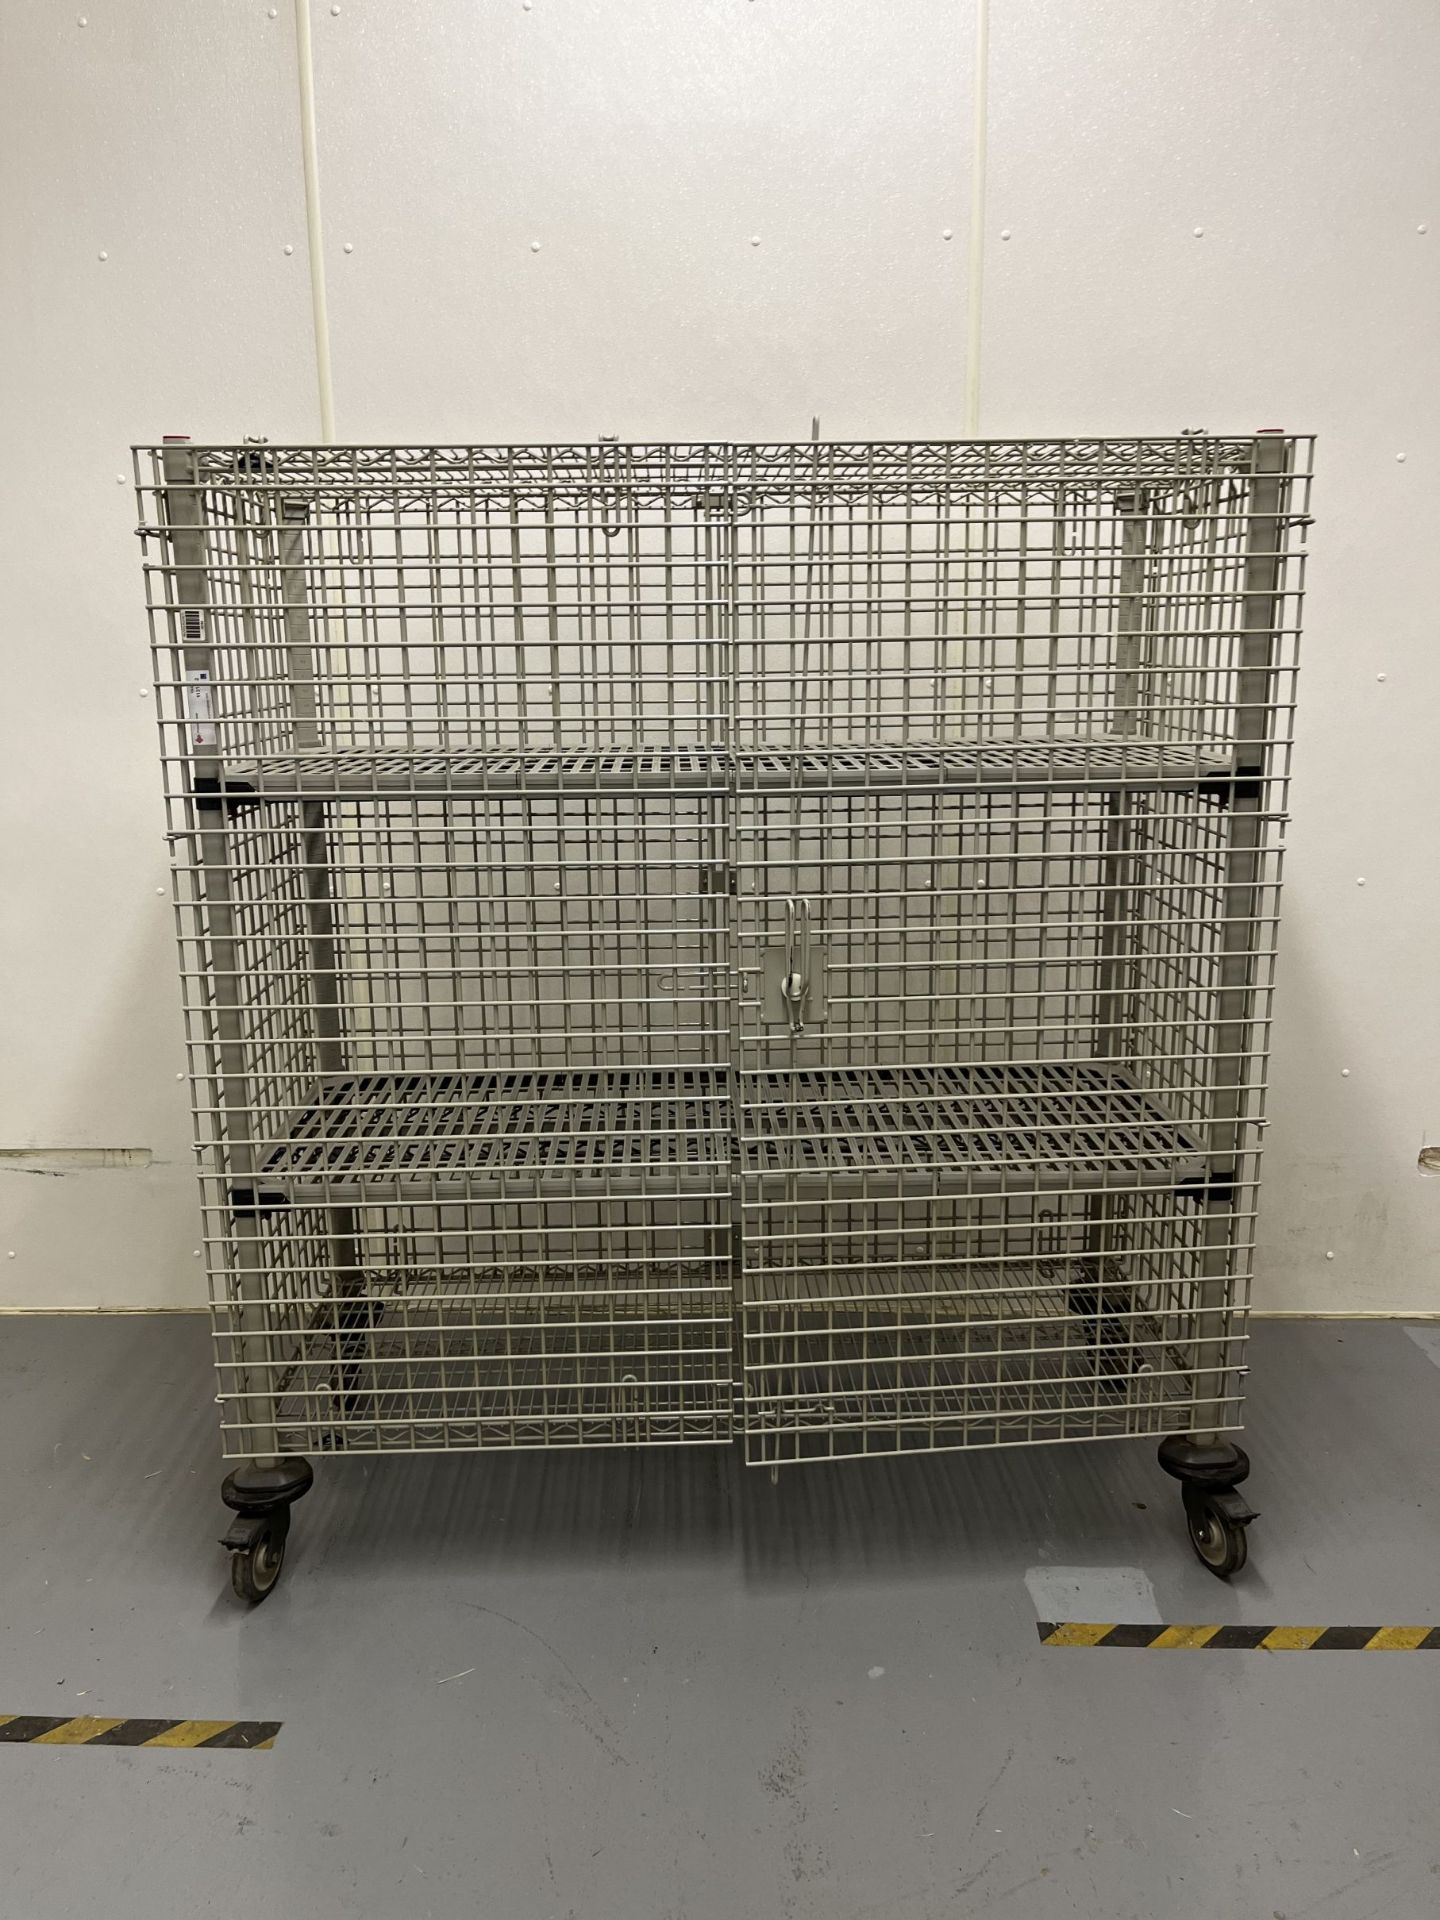 Locking Storage Cage on wheels